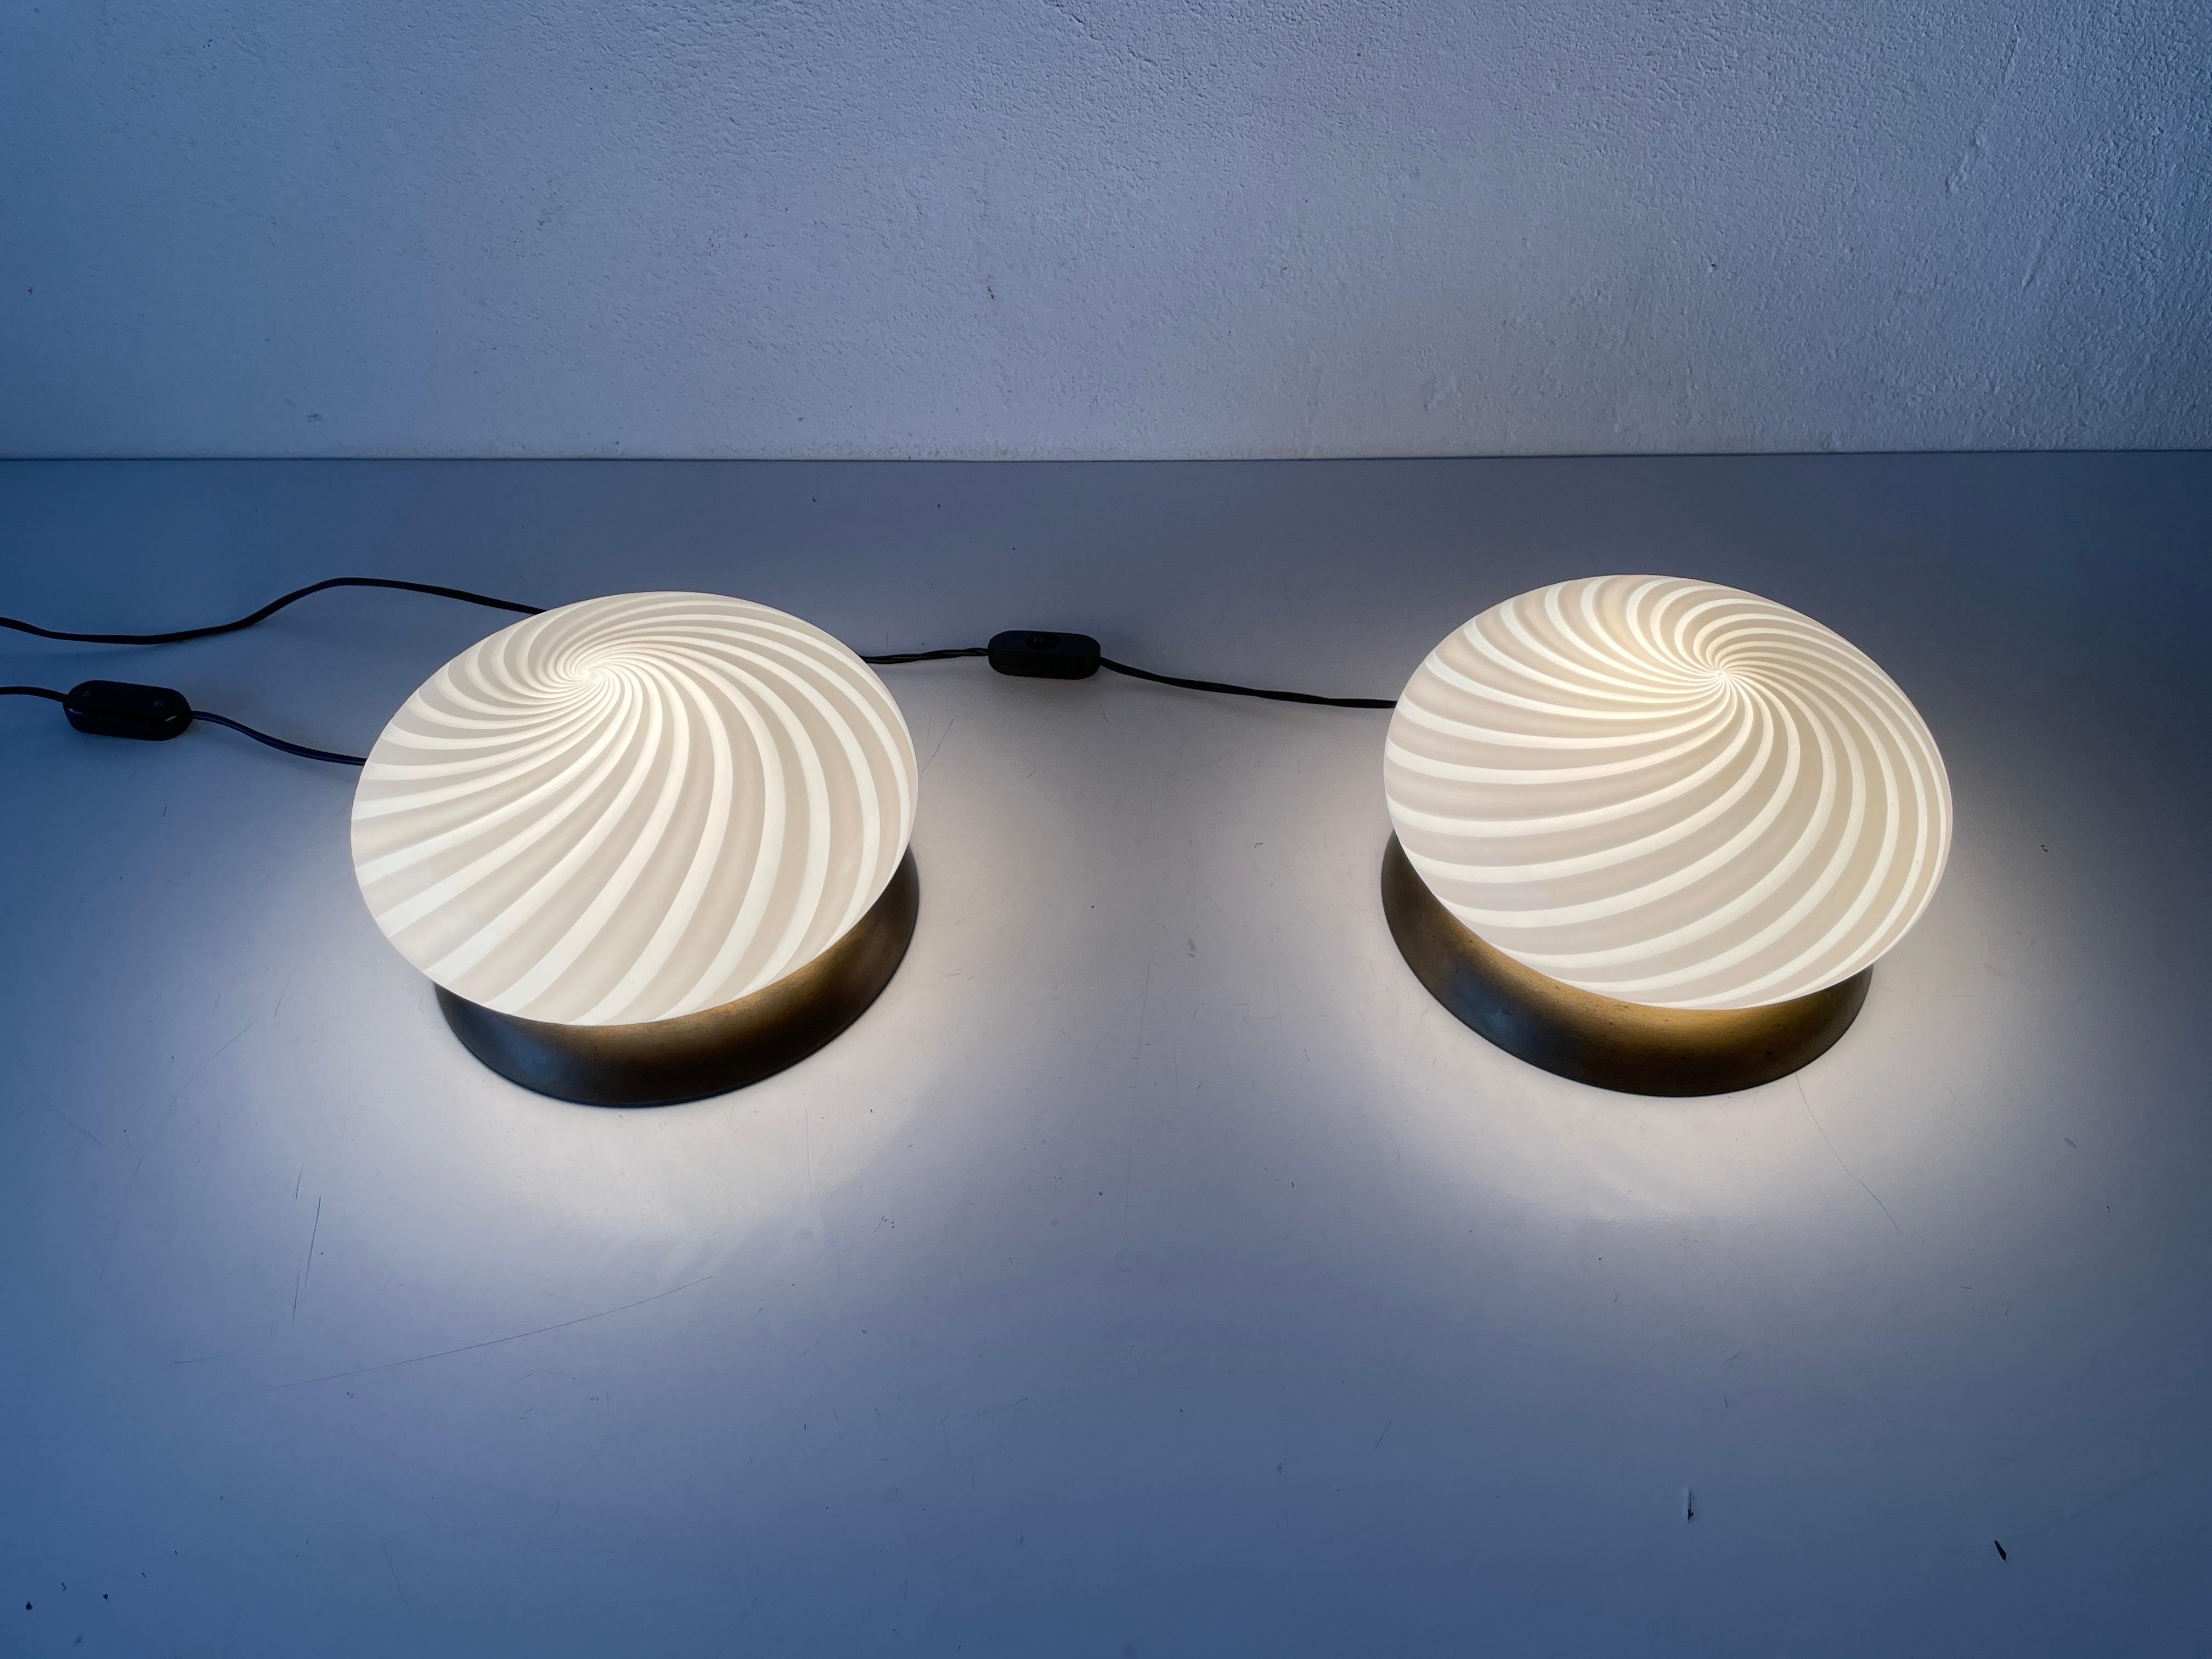 Pair of Table Lamps by Milano-Industria Lampadari Lamter, 1950s, Italy For Sale 1